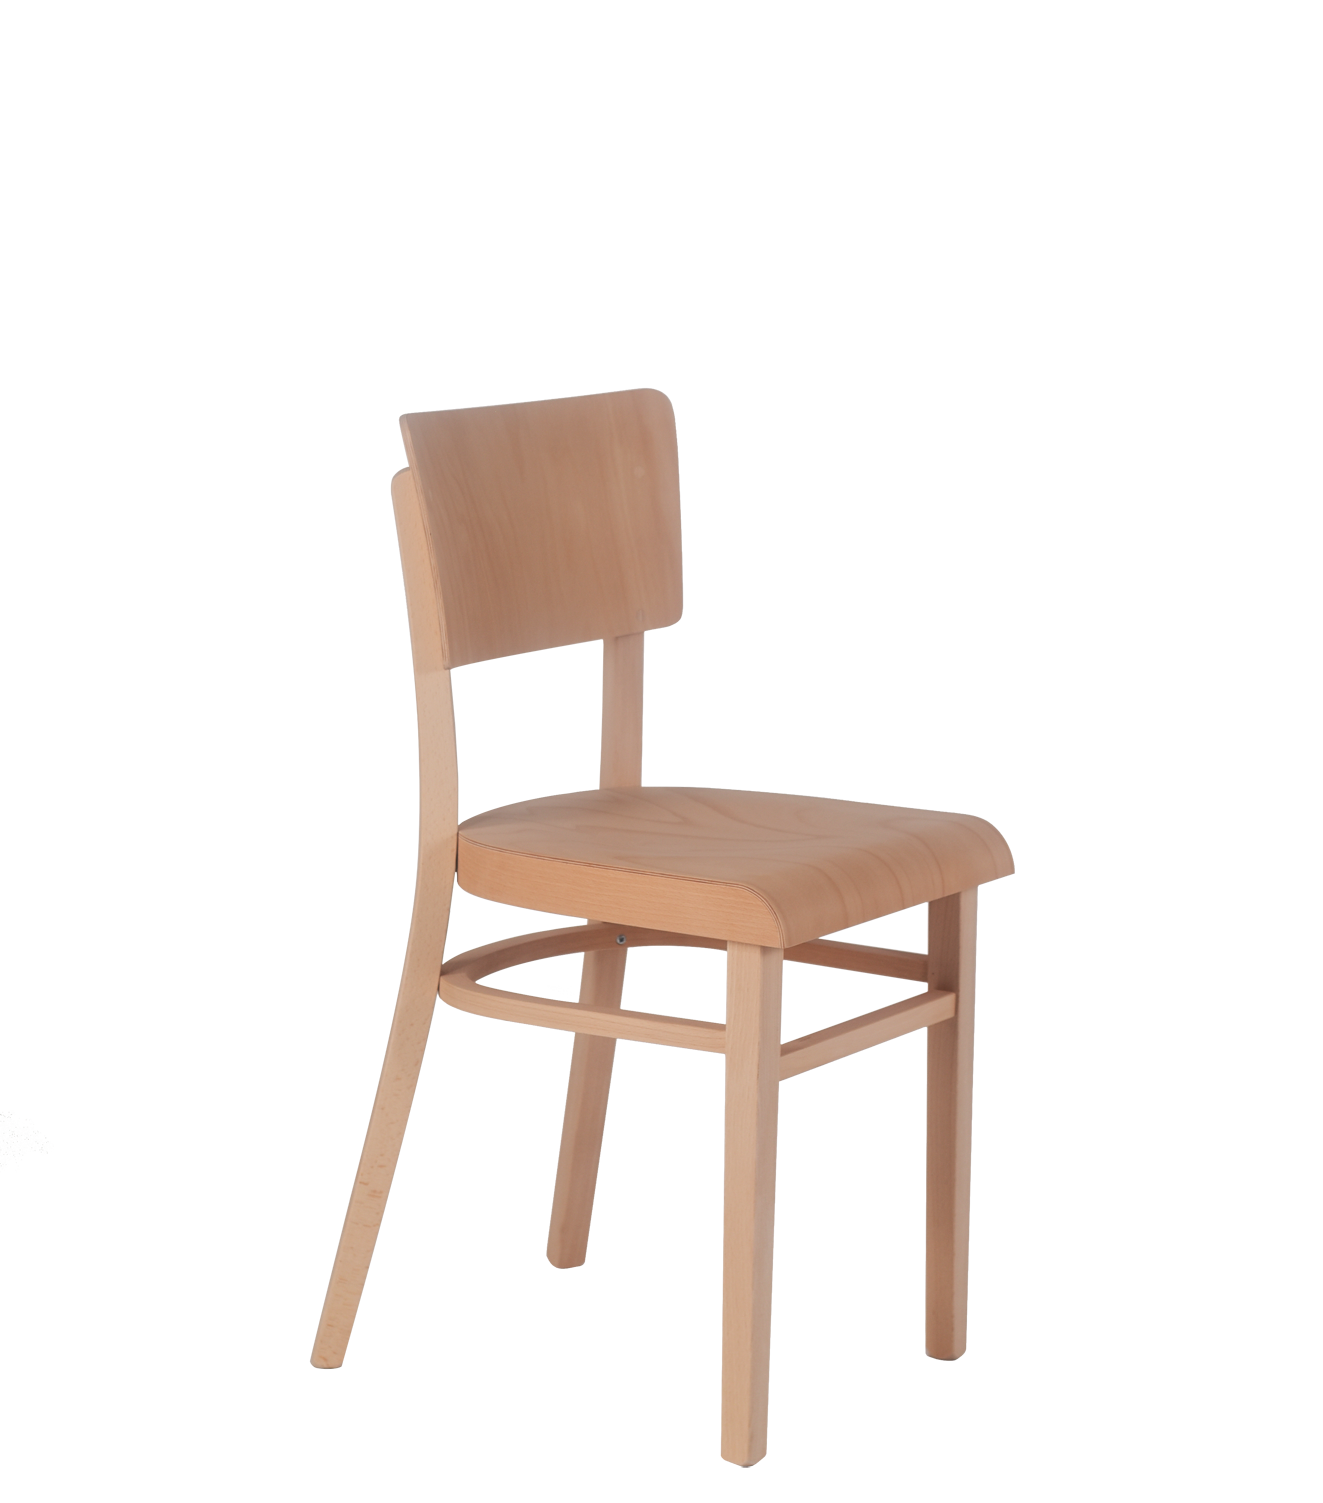 Küchenstuhl aus gebogener Buche, klassischer Stuhl für Cafeteria, Restaurant und Küche. Landhausstuhl, Bauernhausstuhl, Bugholzstuhl